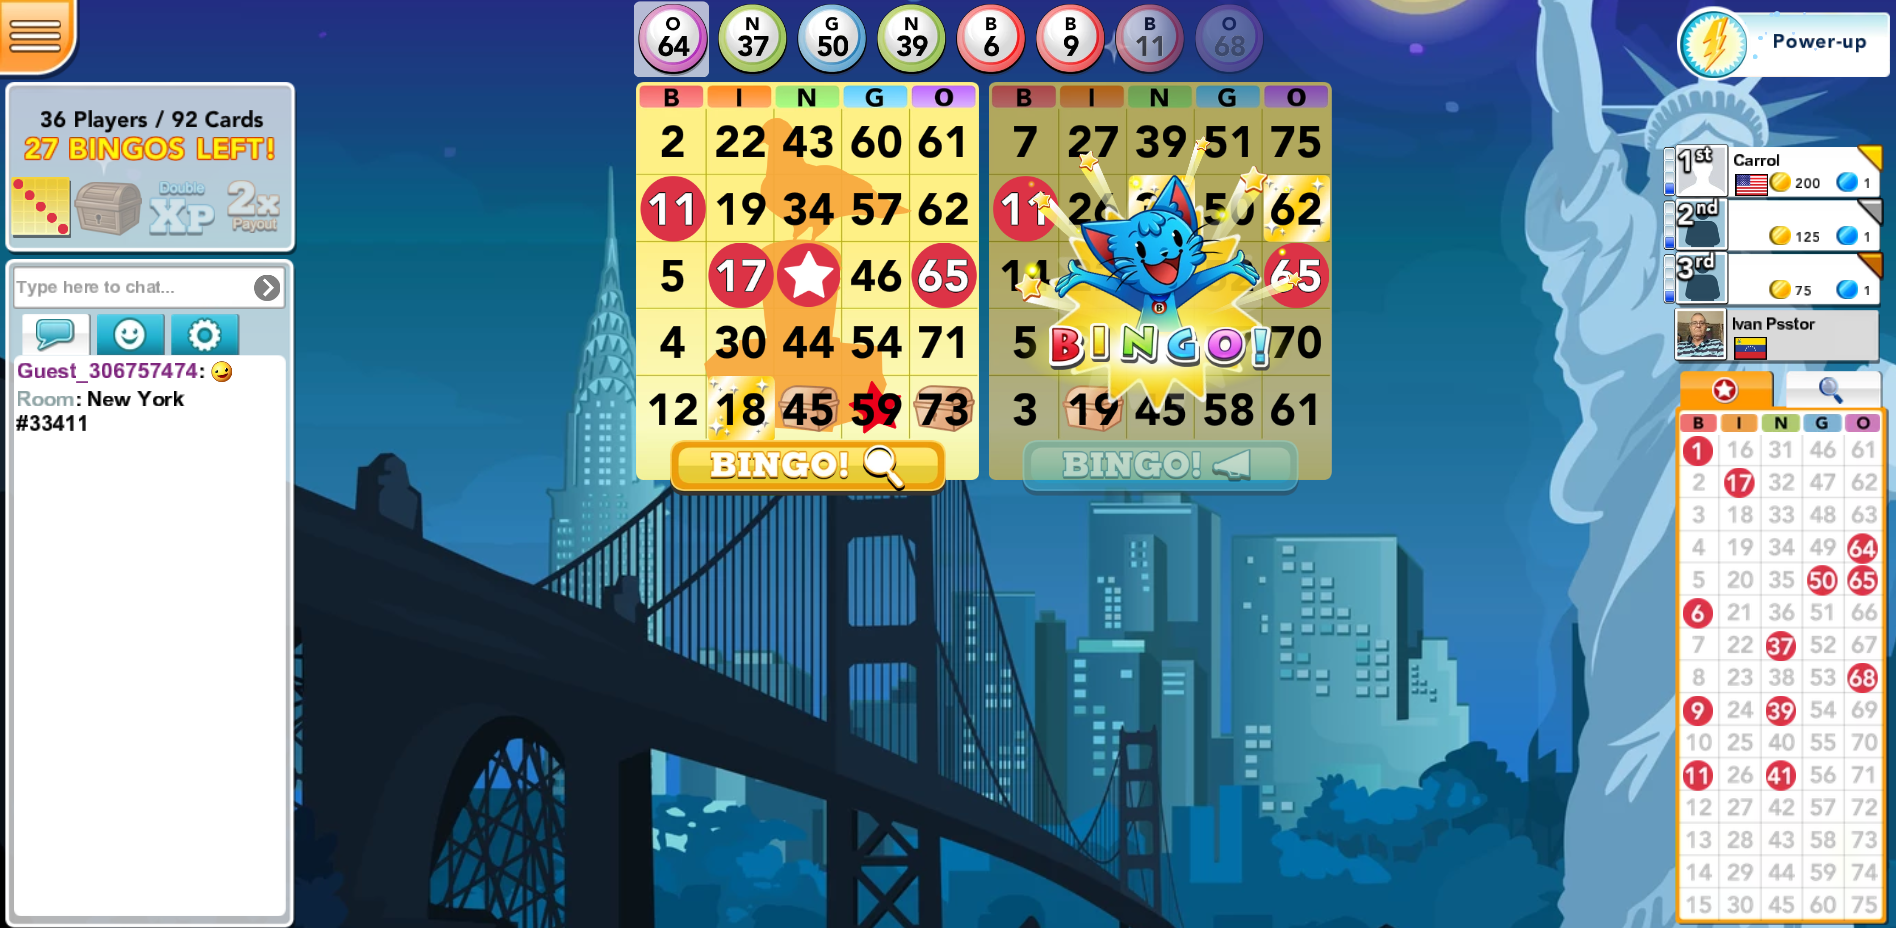 Bingo Blitz permainan bingo online yang menyenangkan